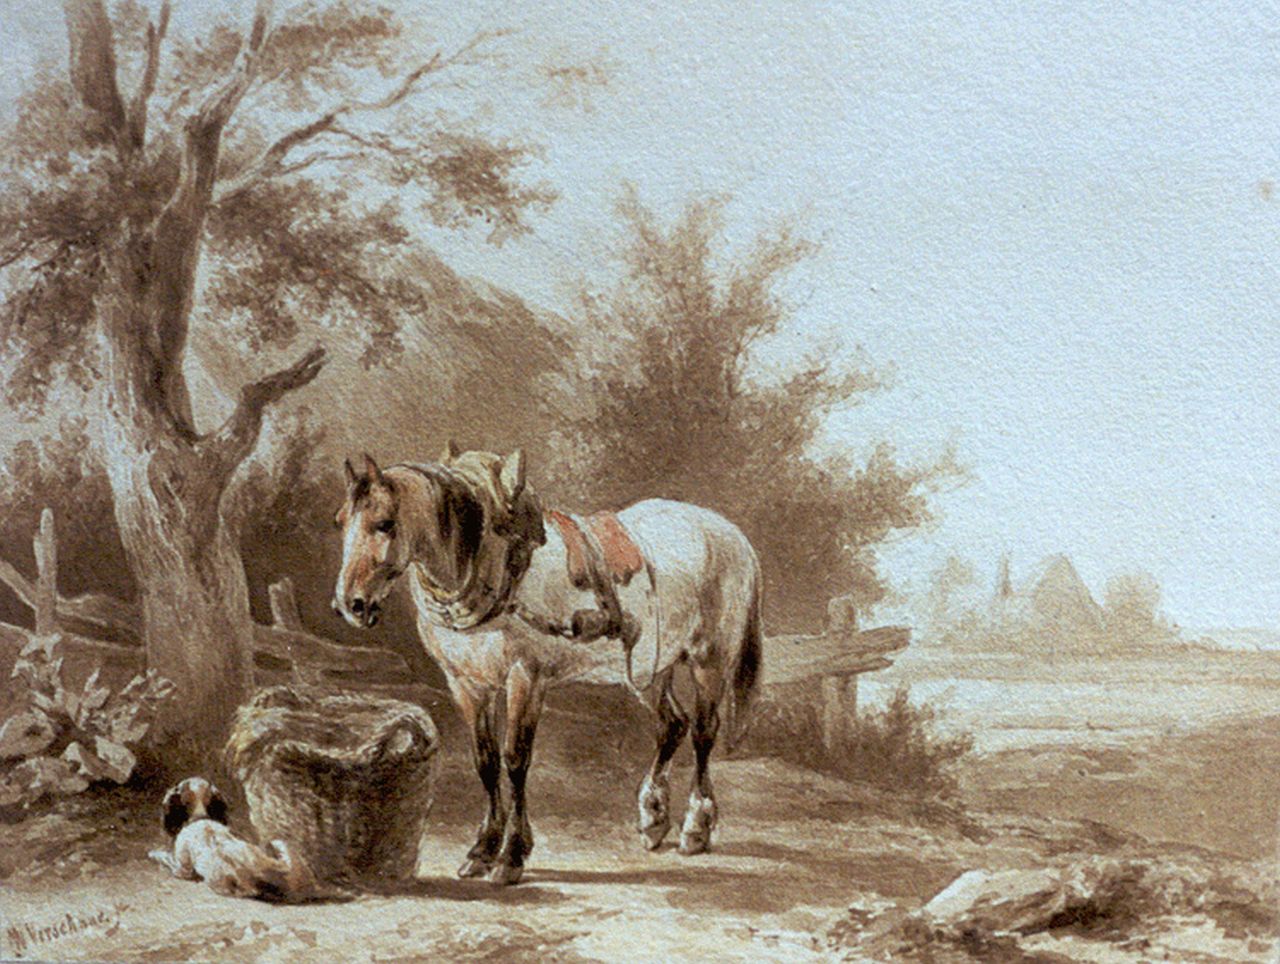 Verschuur W.  | Wouterus Verschuur, Rustend werkpaard bij mand met hooi, inkt op papier 13,7 x 18,0 cm, gesigneerd linksonder